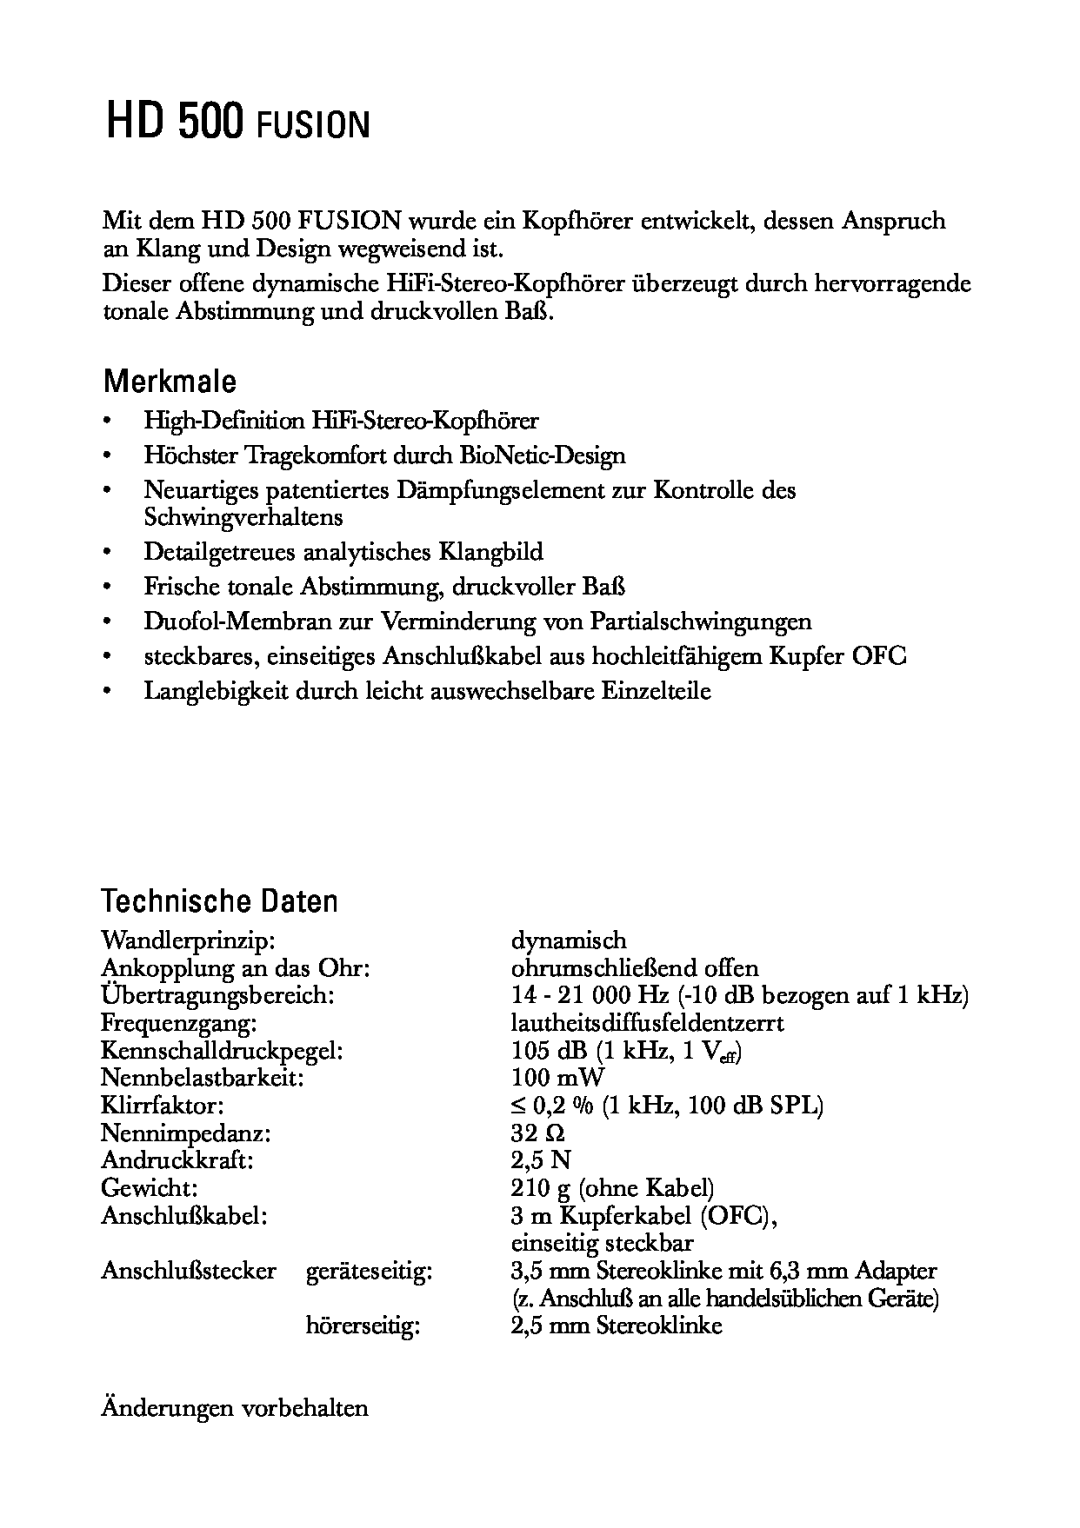 Sennheiser manual HD 500 FUSION, Merkmale, Technische Daten 